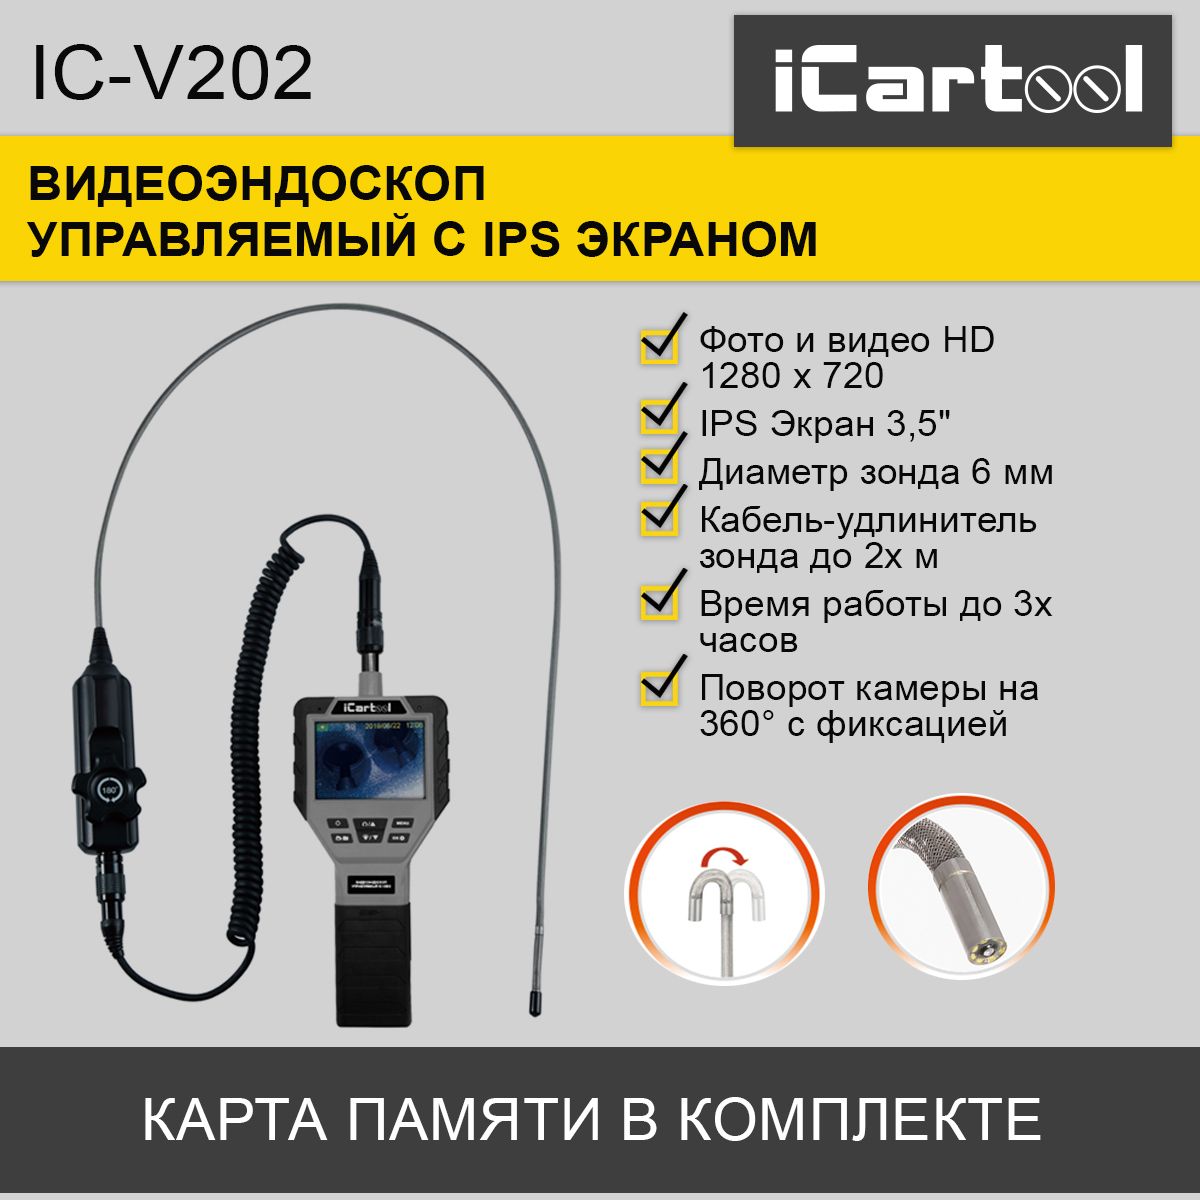 Видеоэндоскоп управляемый iCartool IC-V202, 3.5